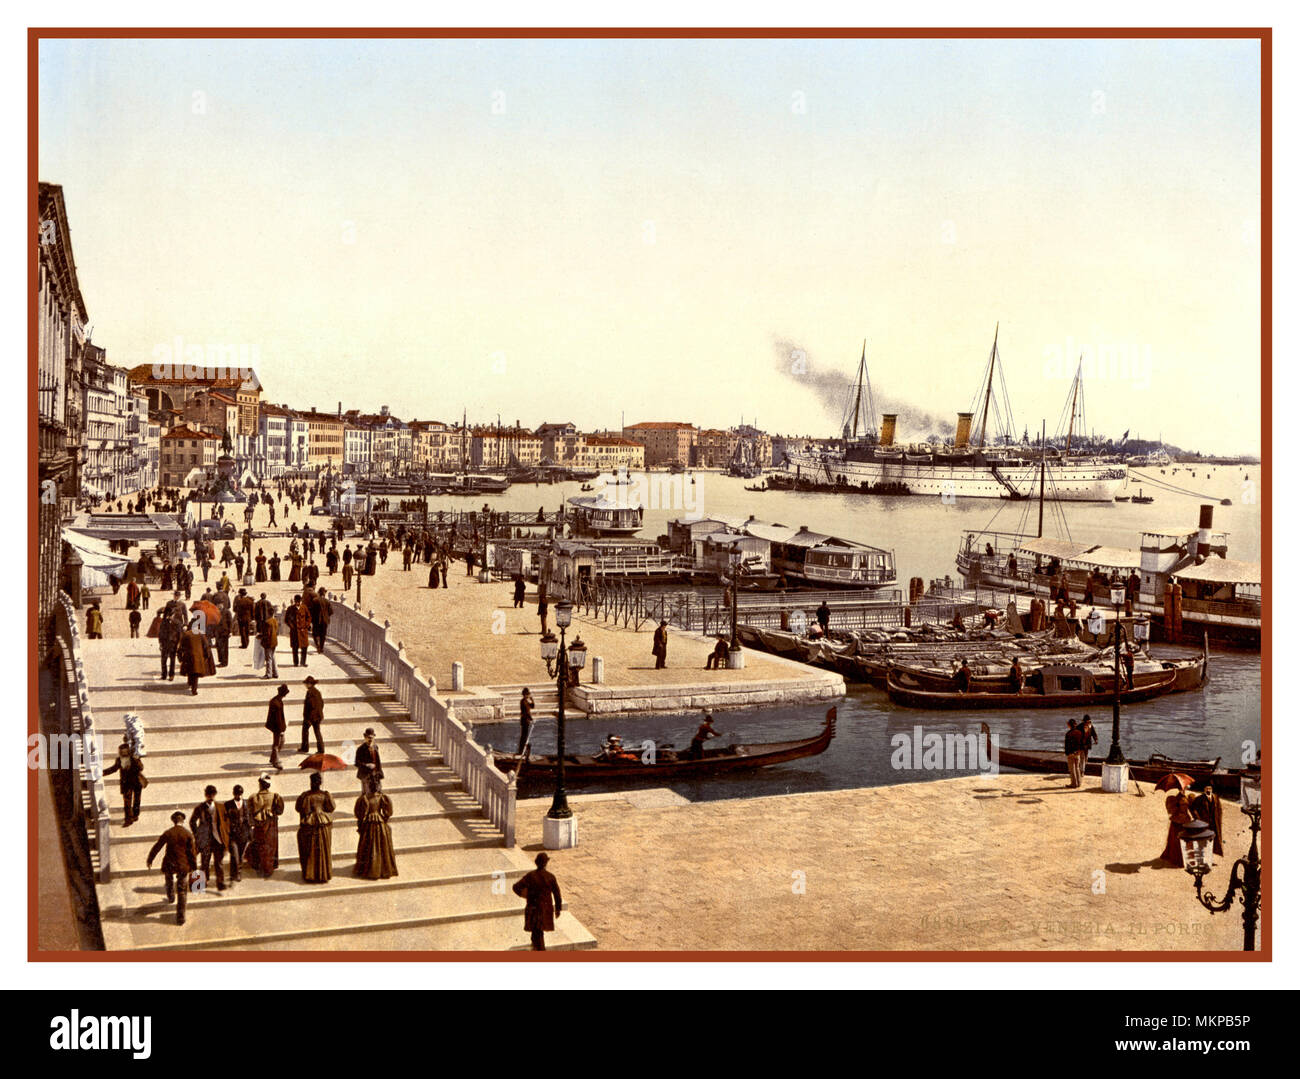 Alte historische Photochrom Venedig Hafen mit alten Dampf schiff Kreuzfahrtschiff Palazzo dei Dogi, Dogenpalast Venedig, Italien 1890-1900 Stockfoto